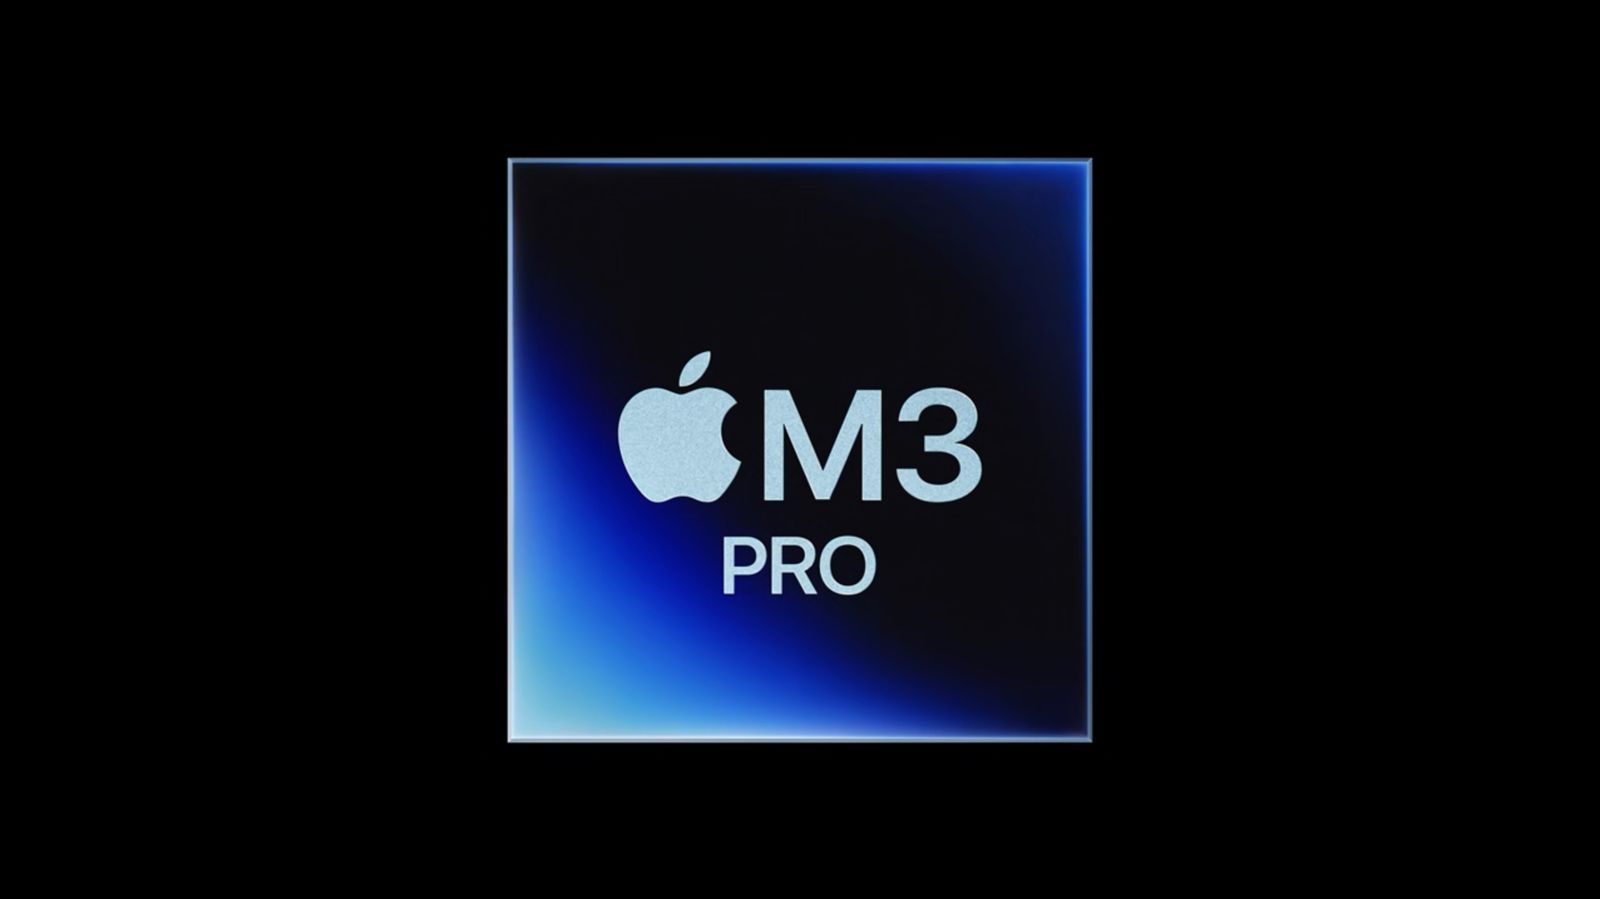 Apple zmniejszyło przepustowość pamięci nowego procesora M3 Pro o jedną czwartą w porównaniu do procesorów M1 Pro i M2 Pro